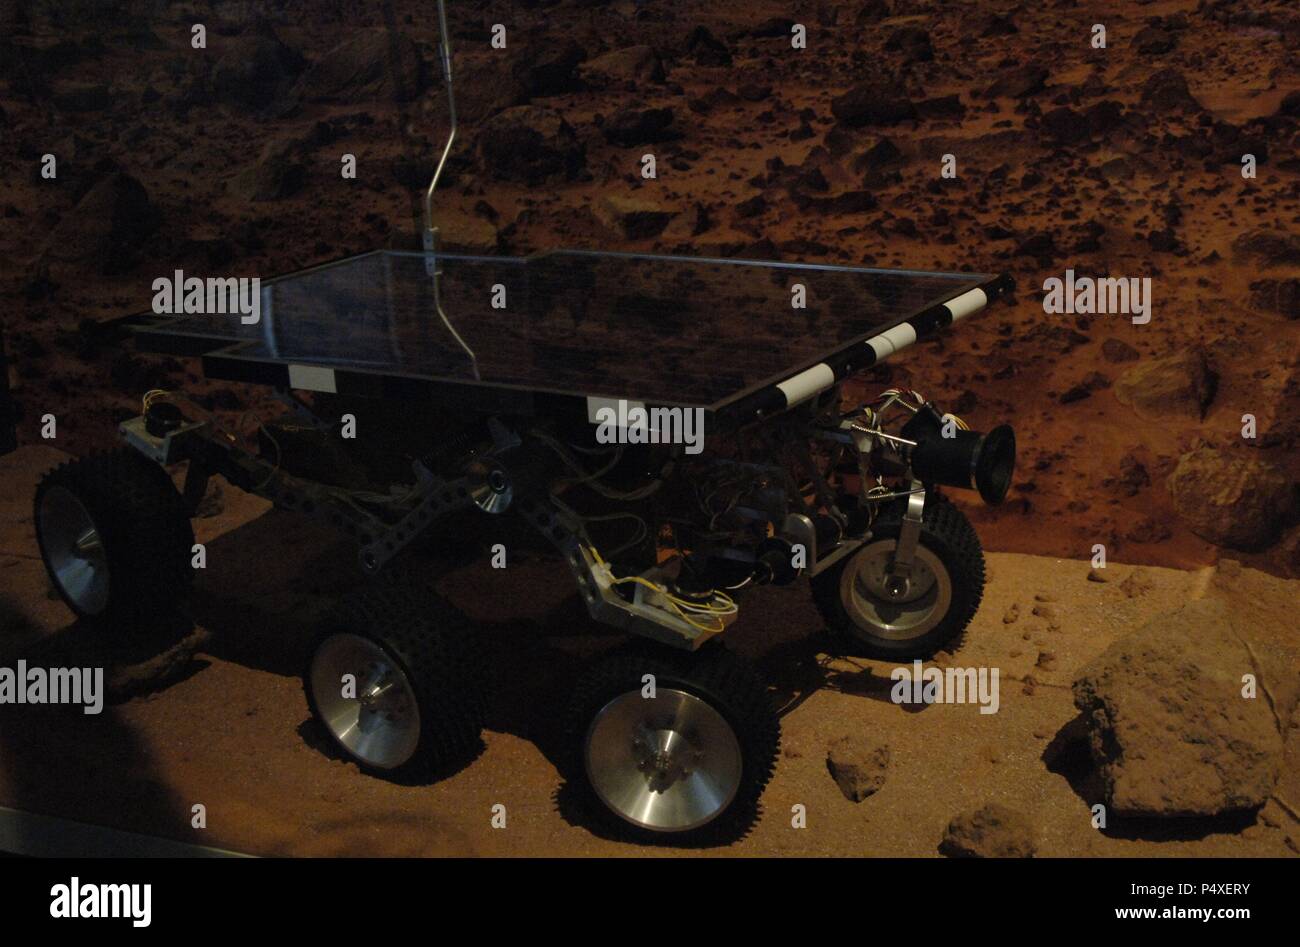 SOJOURNER (MOCK-UP) (1996). VEHICULO ROBOT utilizado por control remoto en misiones en Marte (56 millones de kms.). Museo del Vuelo. Seattle. Estado de Washington. Estados Unidos. Stock Photo